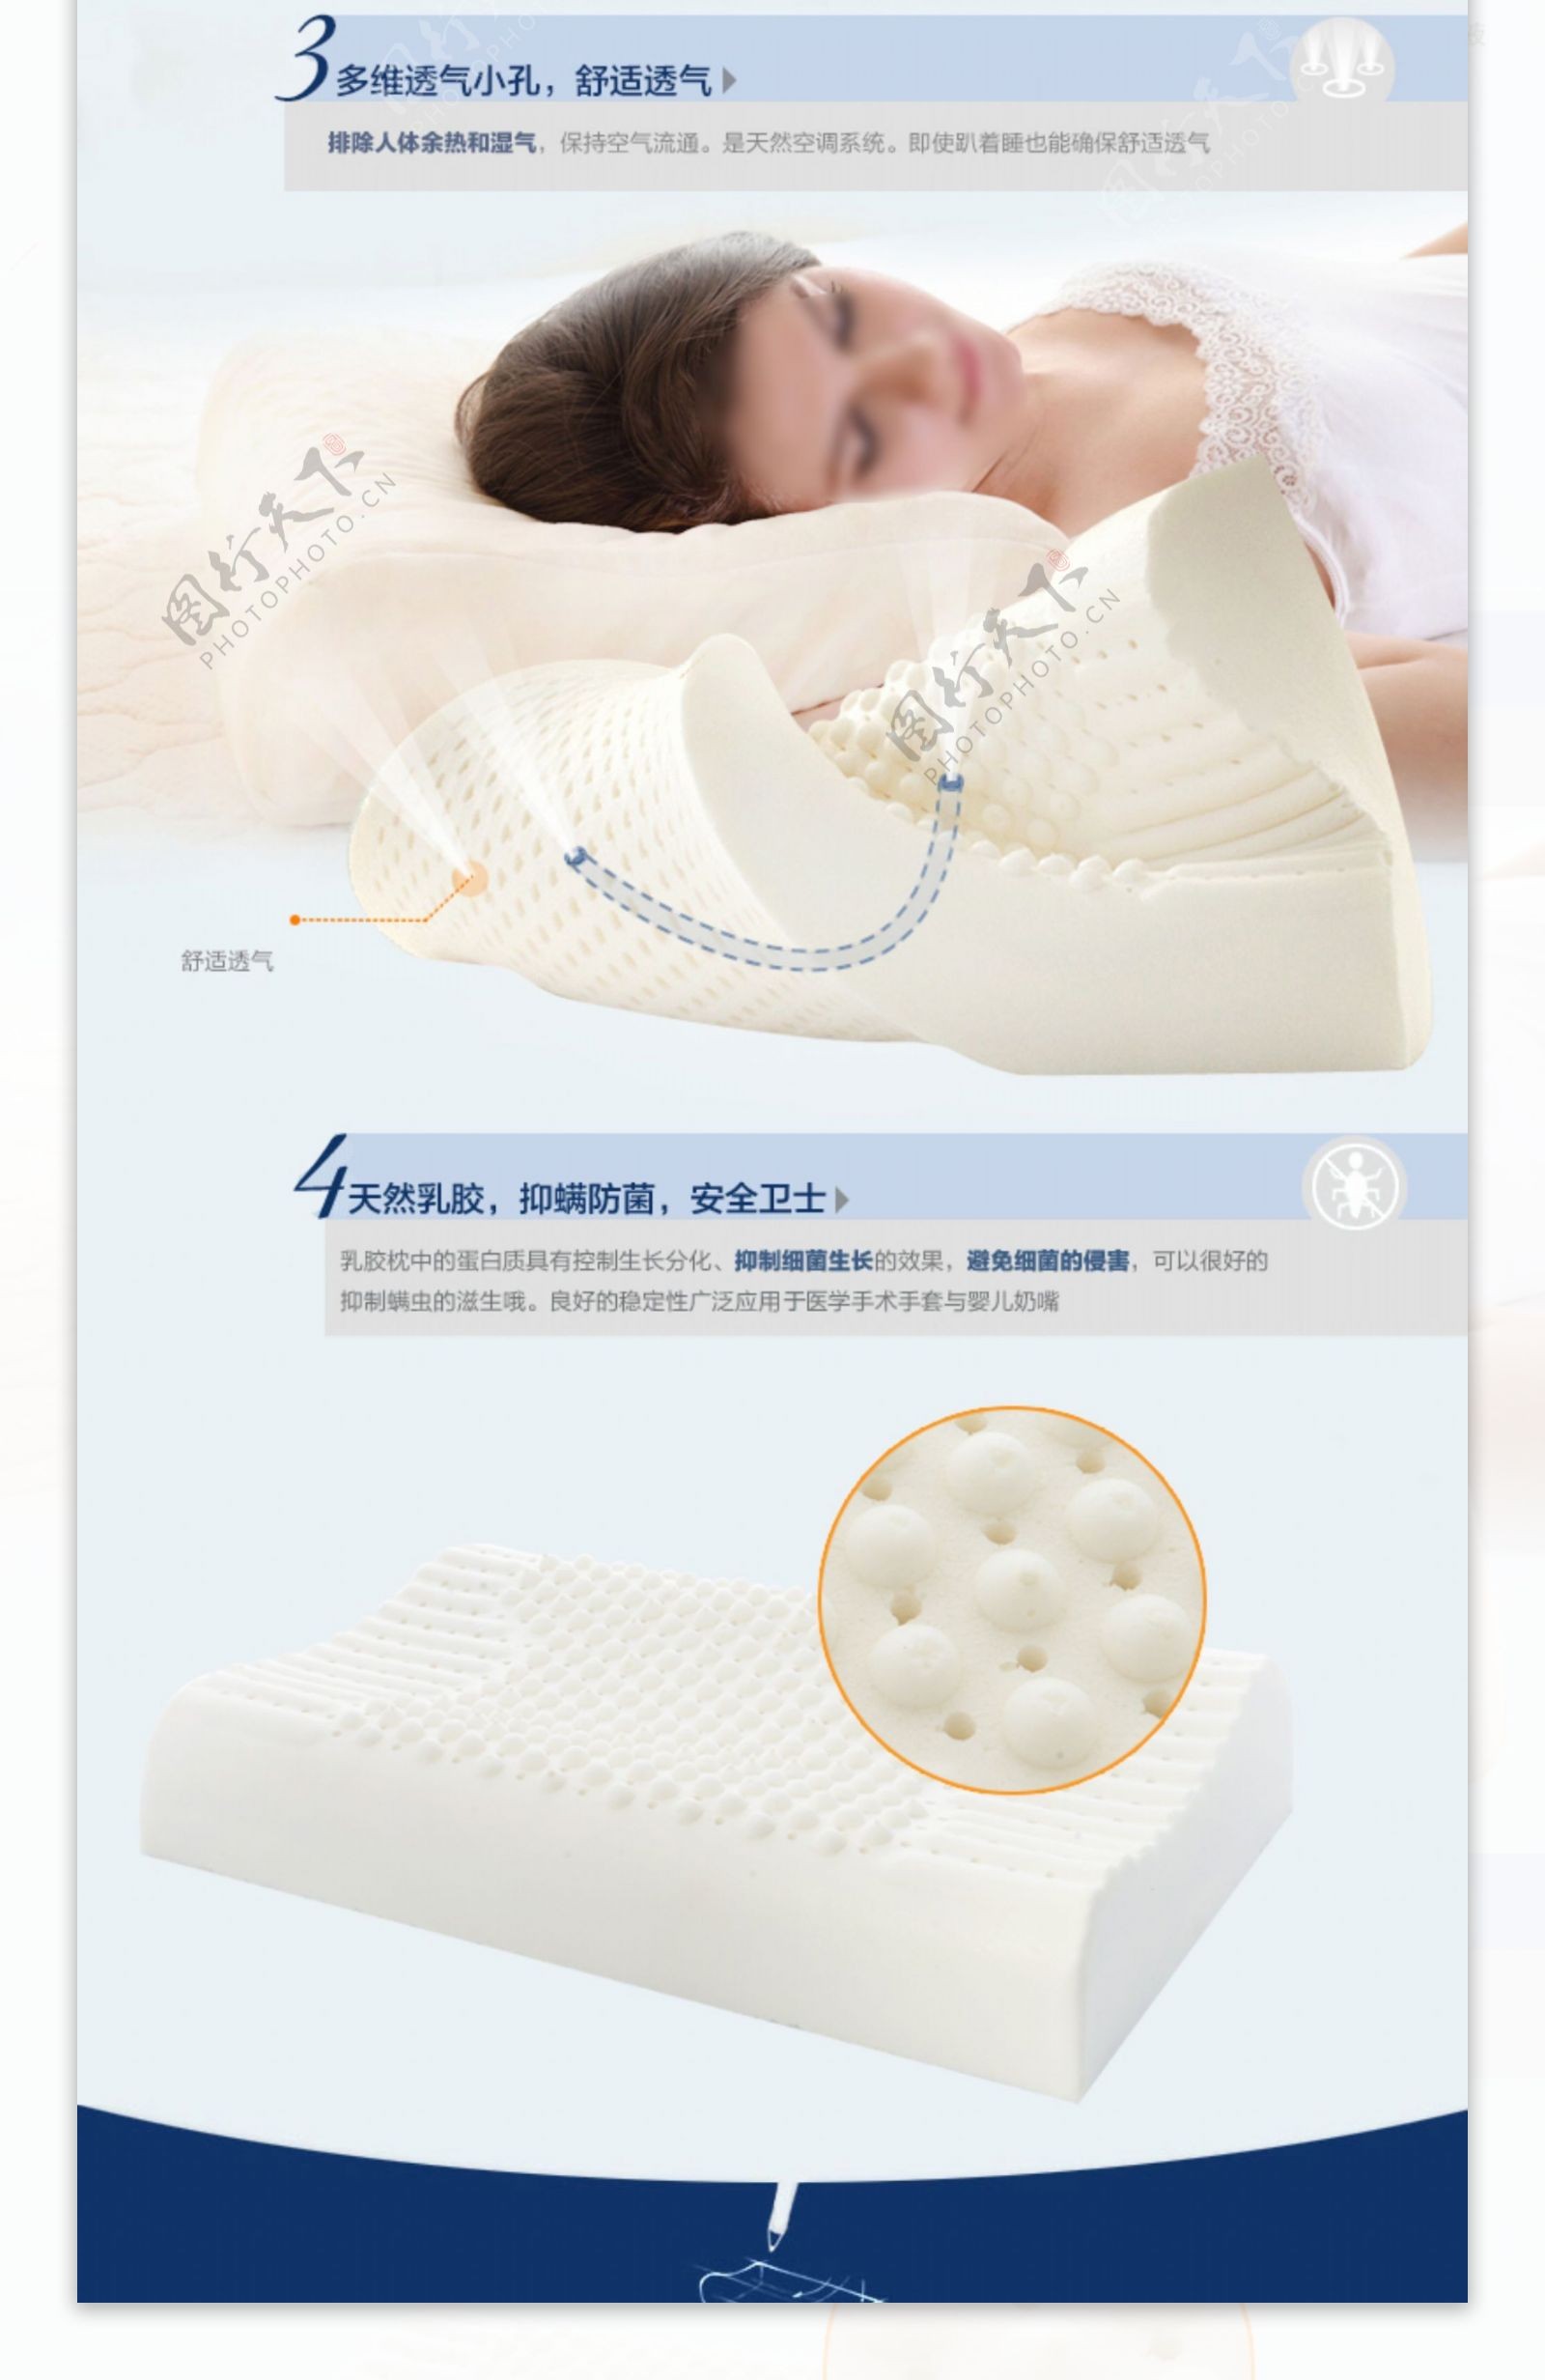 泰国天然乳胶枕头产品详情页设计